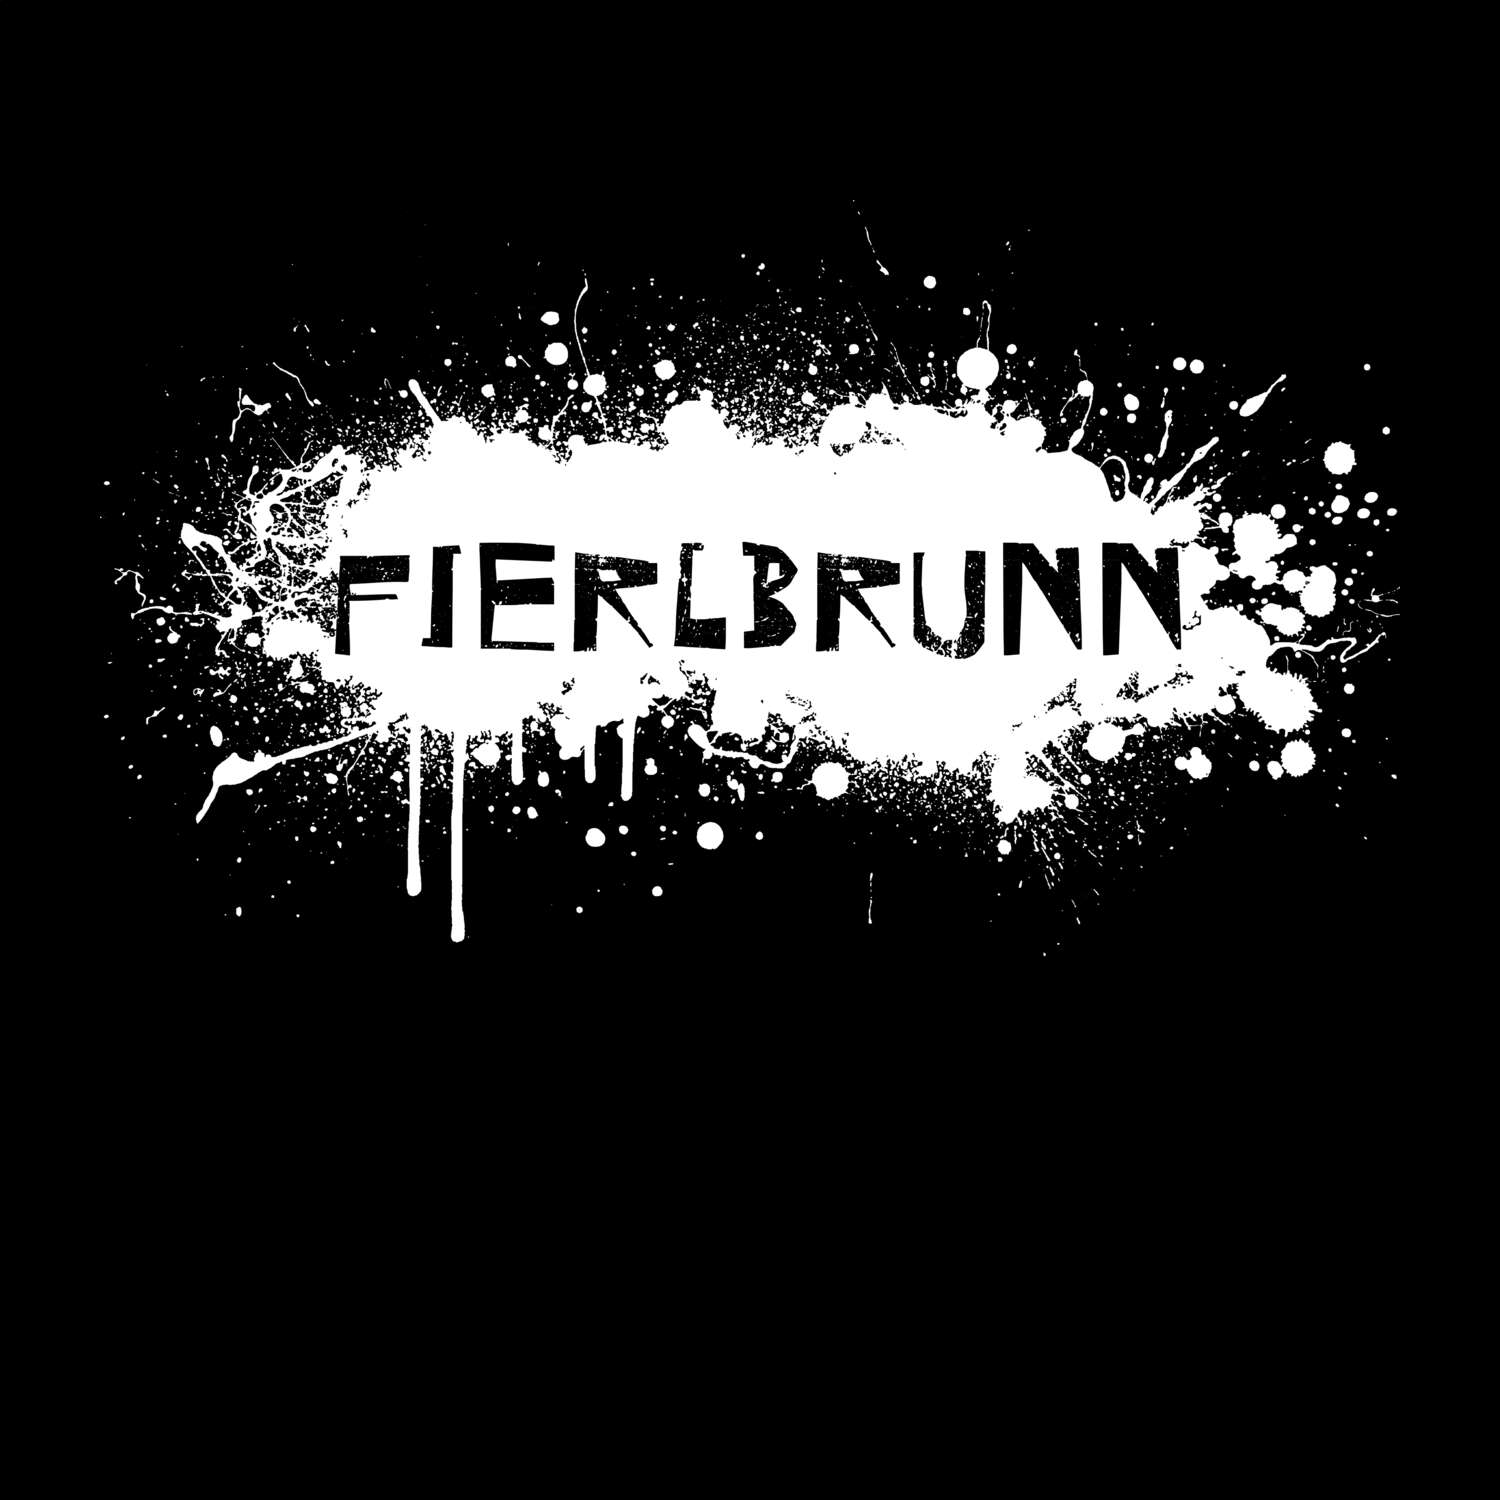 Fierlbrunn T-Shirt »Paint Splash Punk«